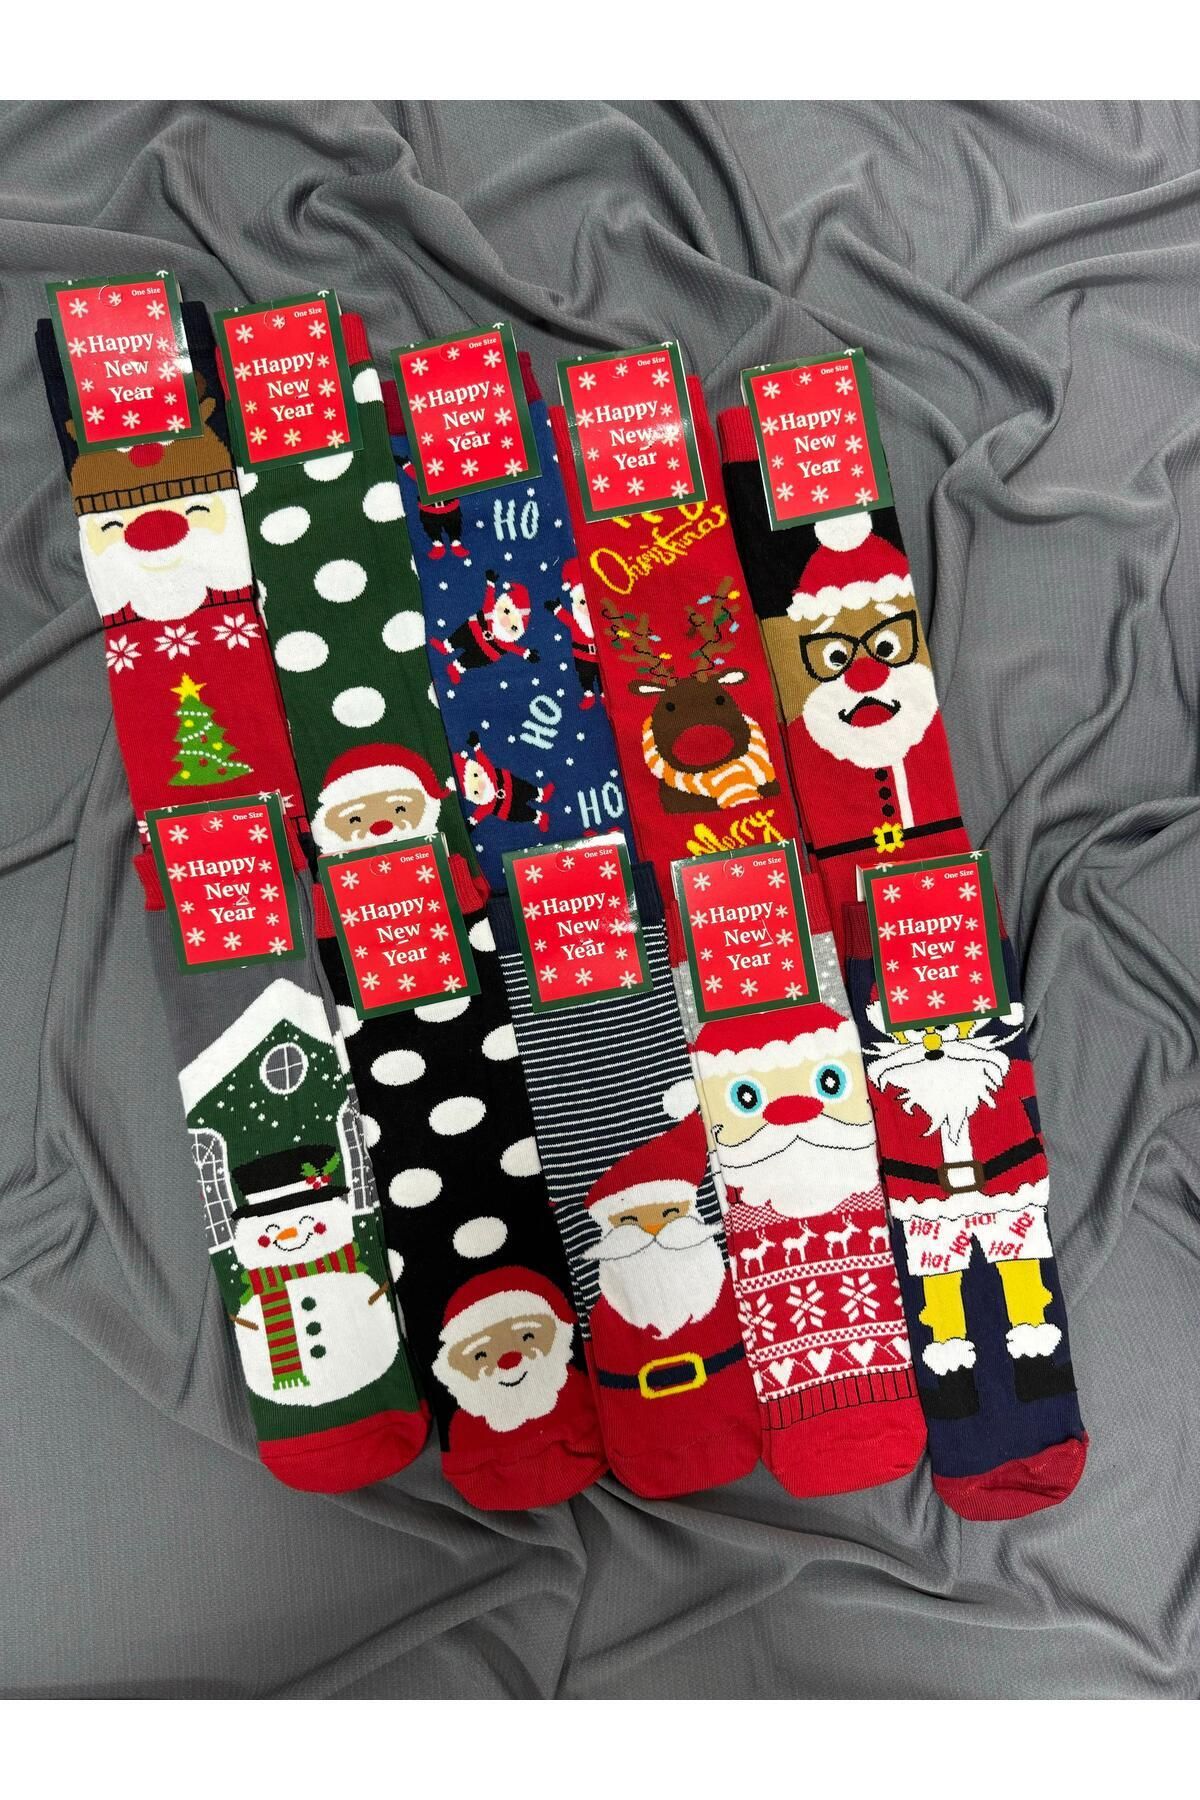 KRC & GLOBAL TEKSTİL Yılbaşı - Noel - Christmas Temalı Unisex Çorapları 10'Lu